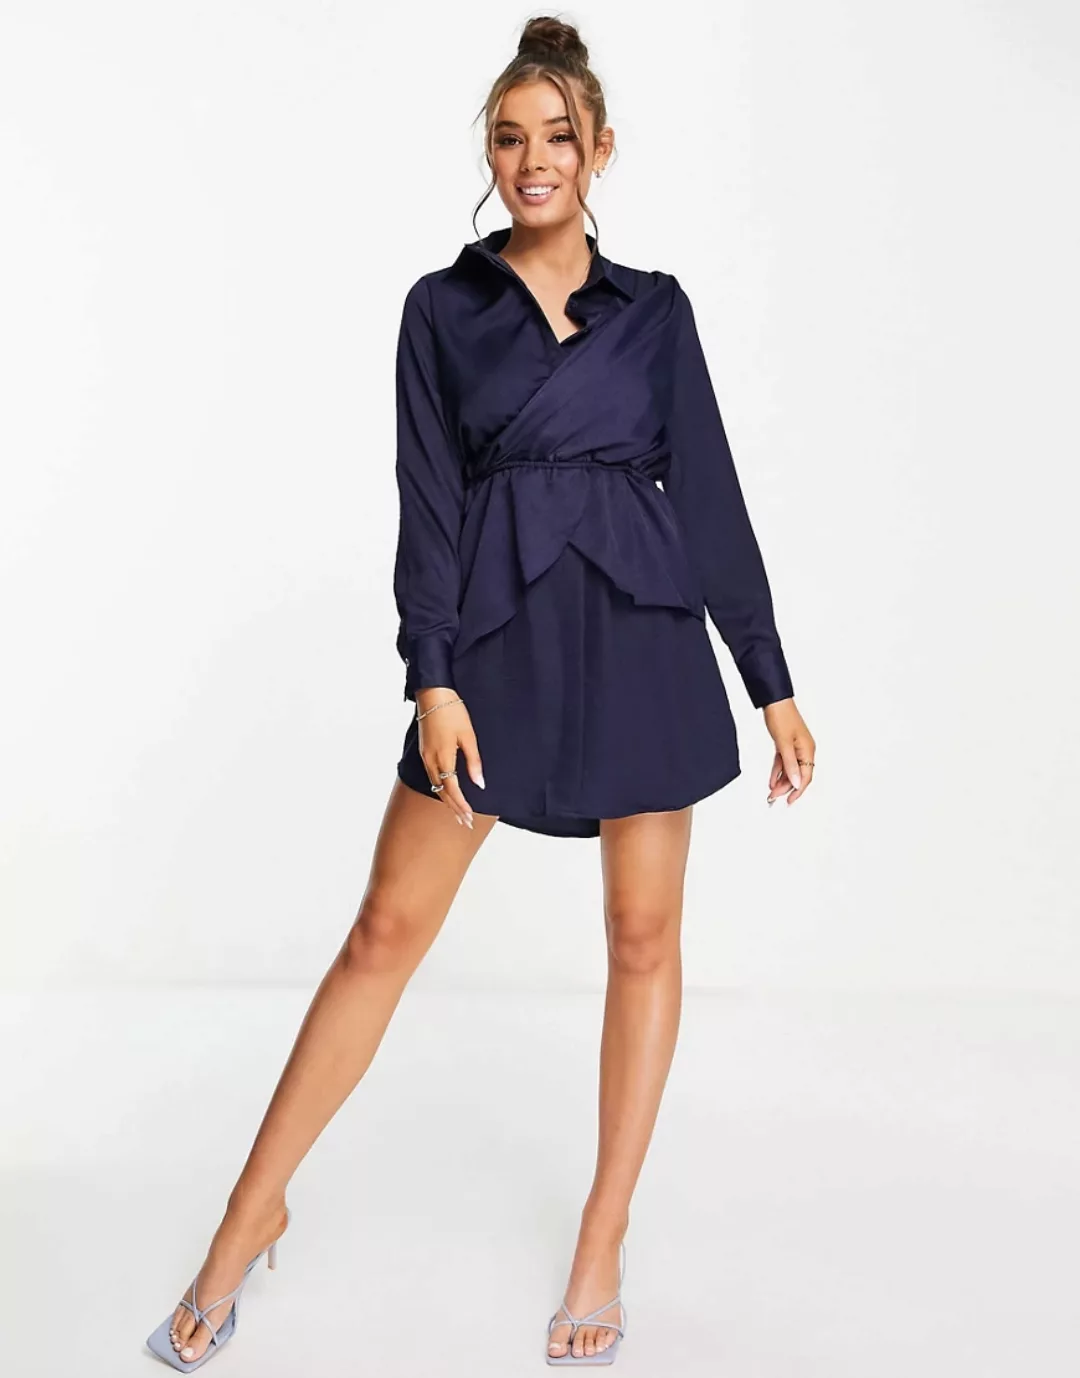 Lola May – Kurzes Hemdkleid aus Satin in Mitternachtsblau mit Wickeldetail günstig online kaufen